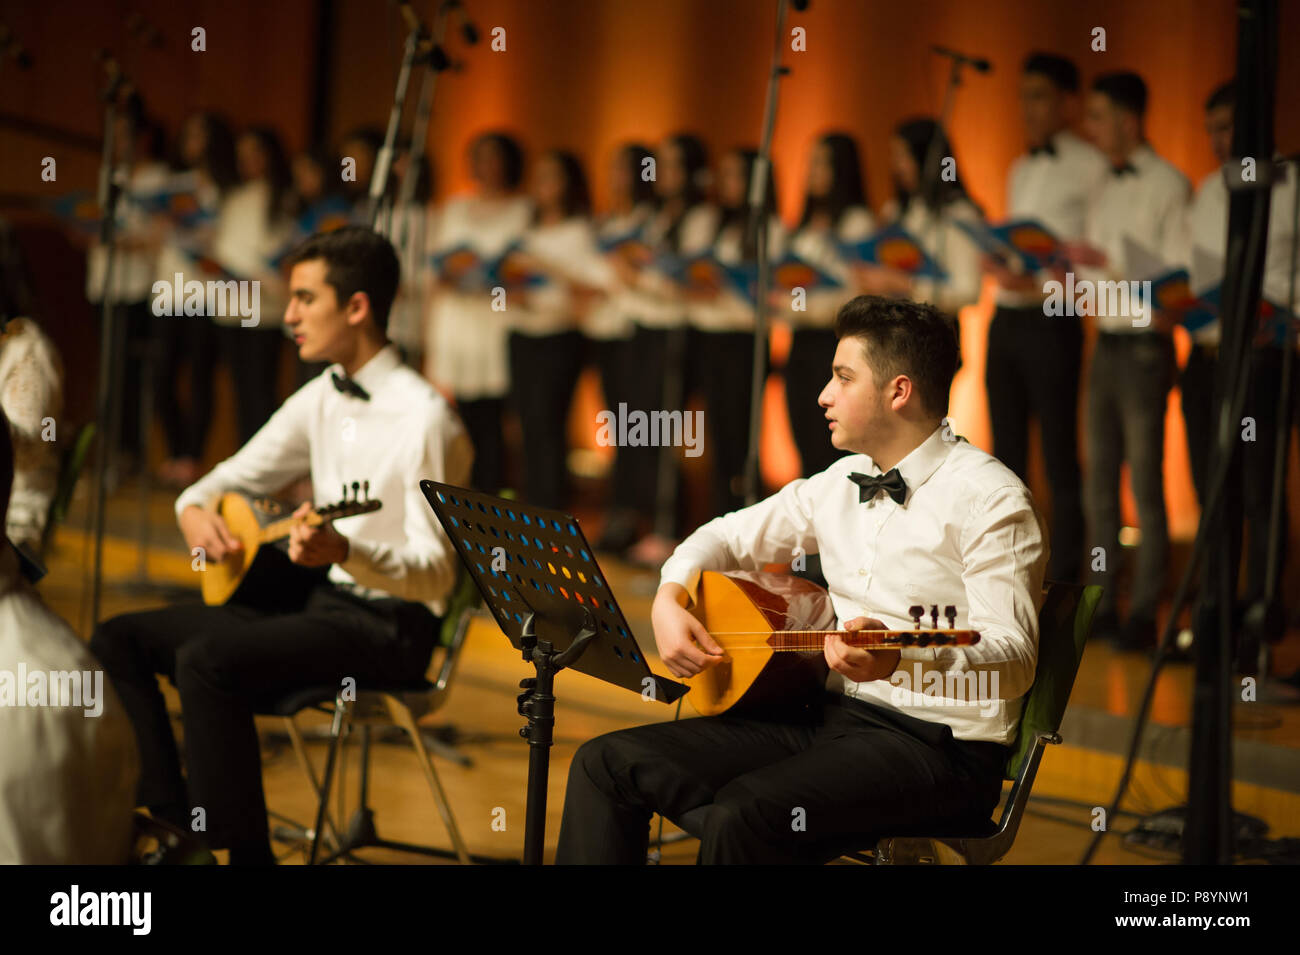 Concert de musique folklorique turc turc turc, des musiciens jouant des instruments Banque D'Images